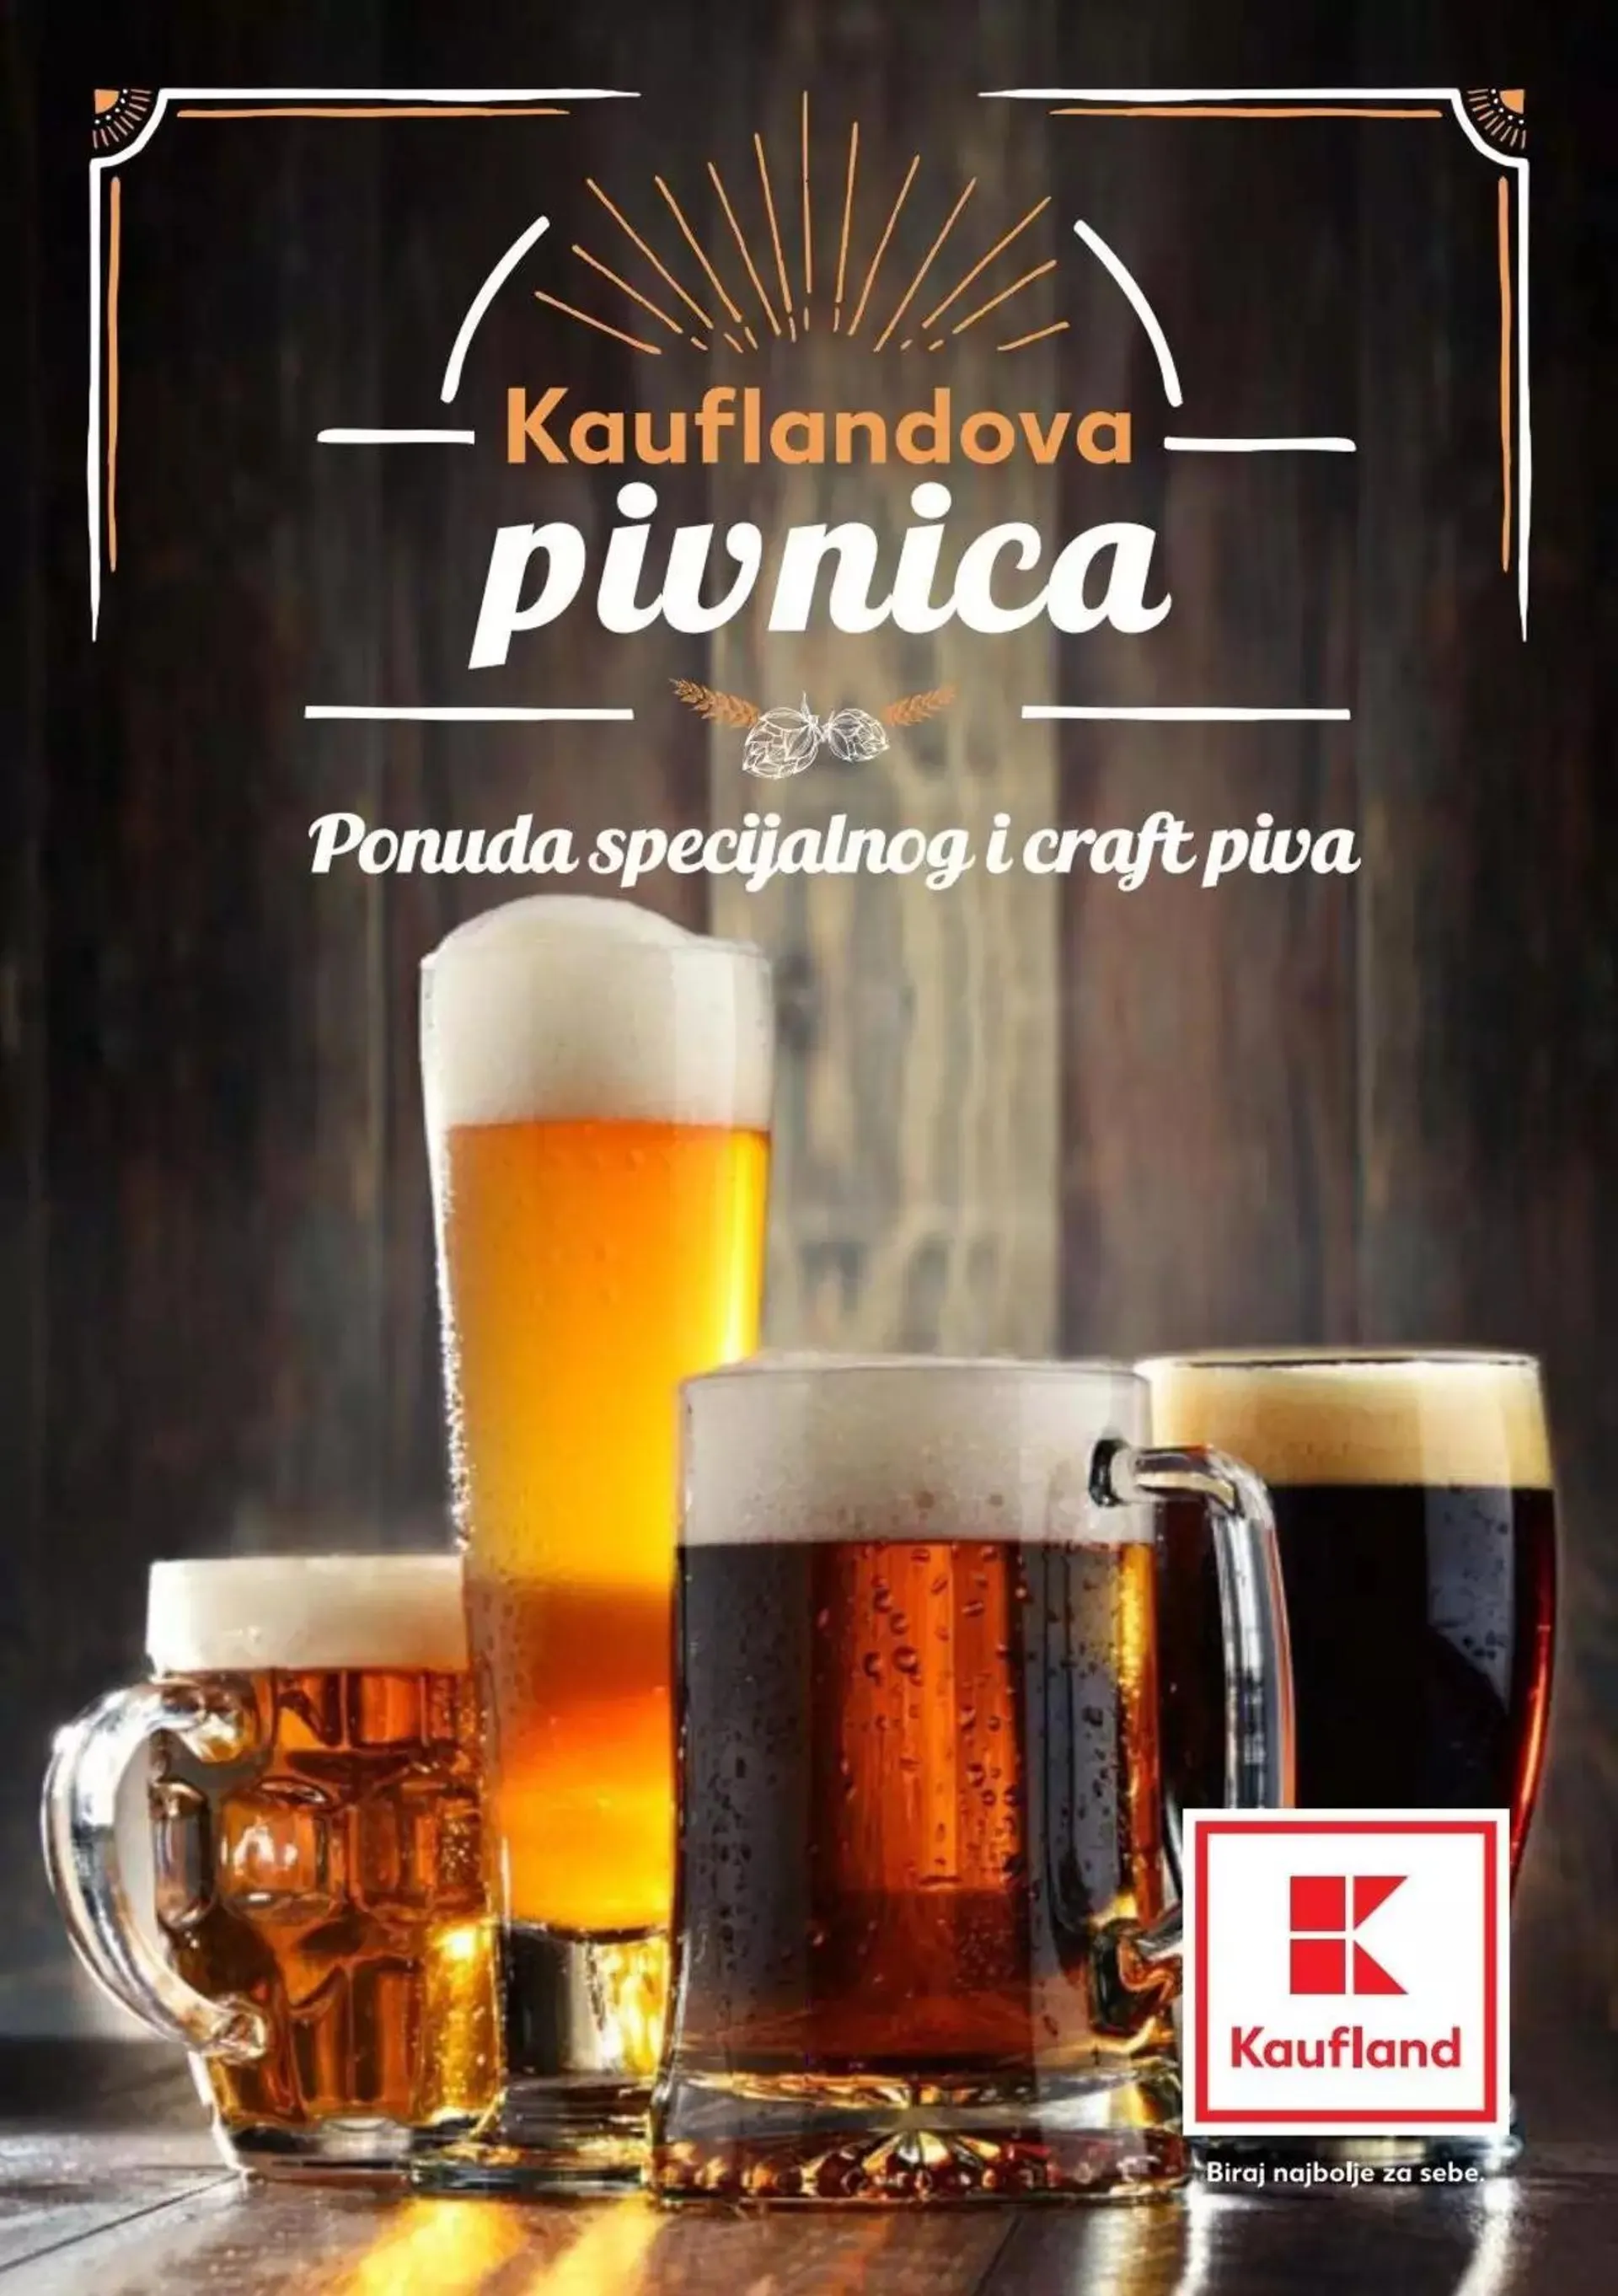 Kaufland - Specijalnog i craft piva - 0